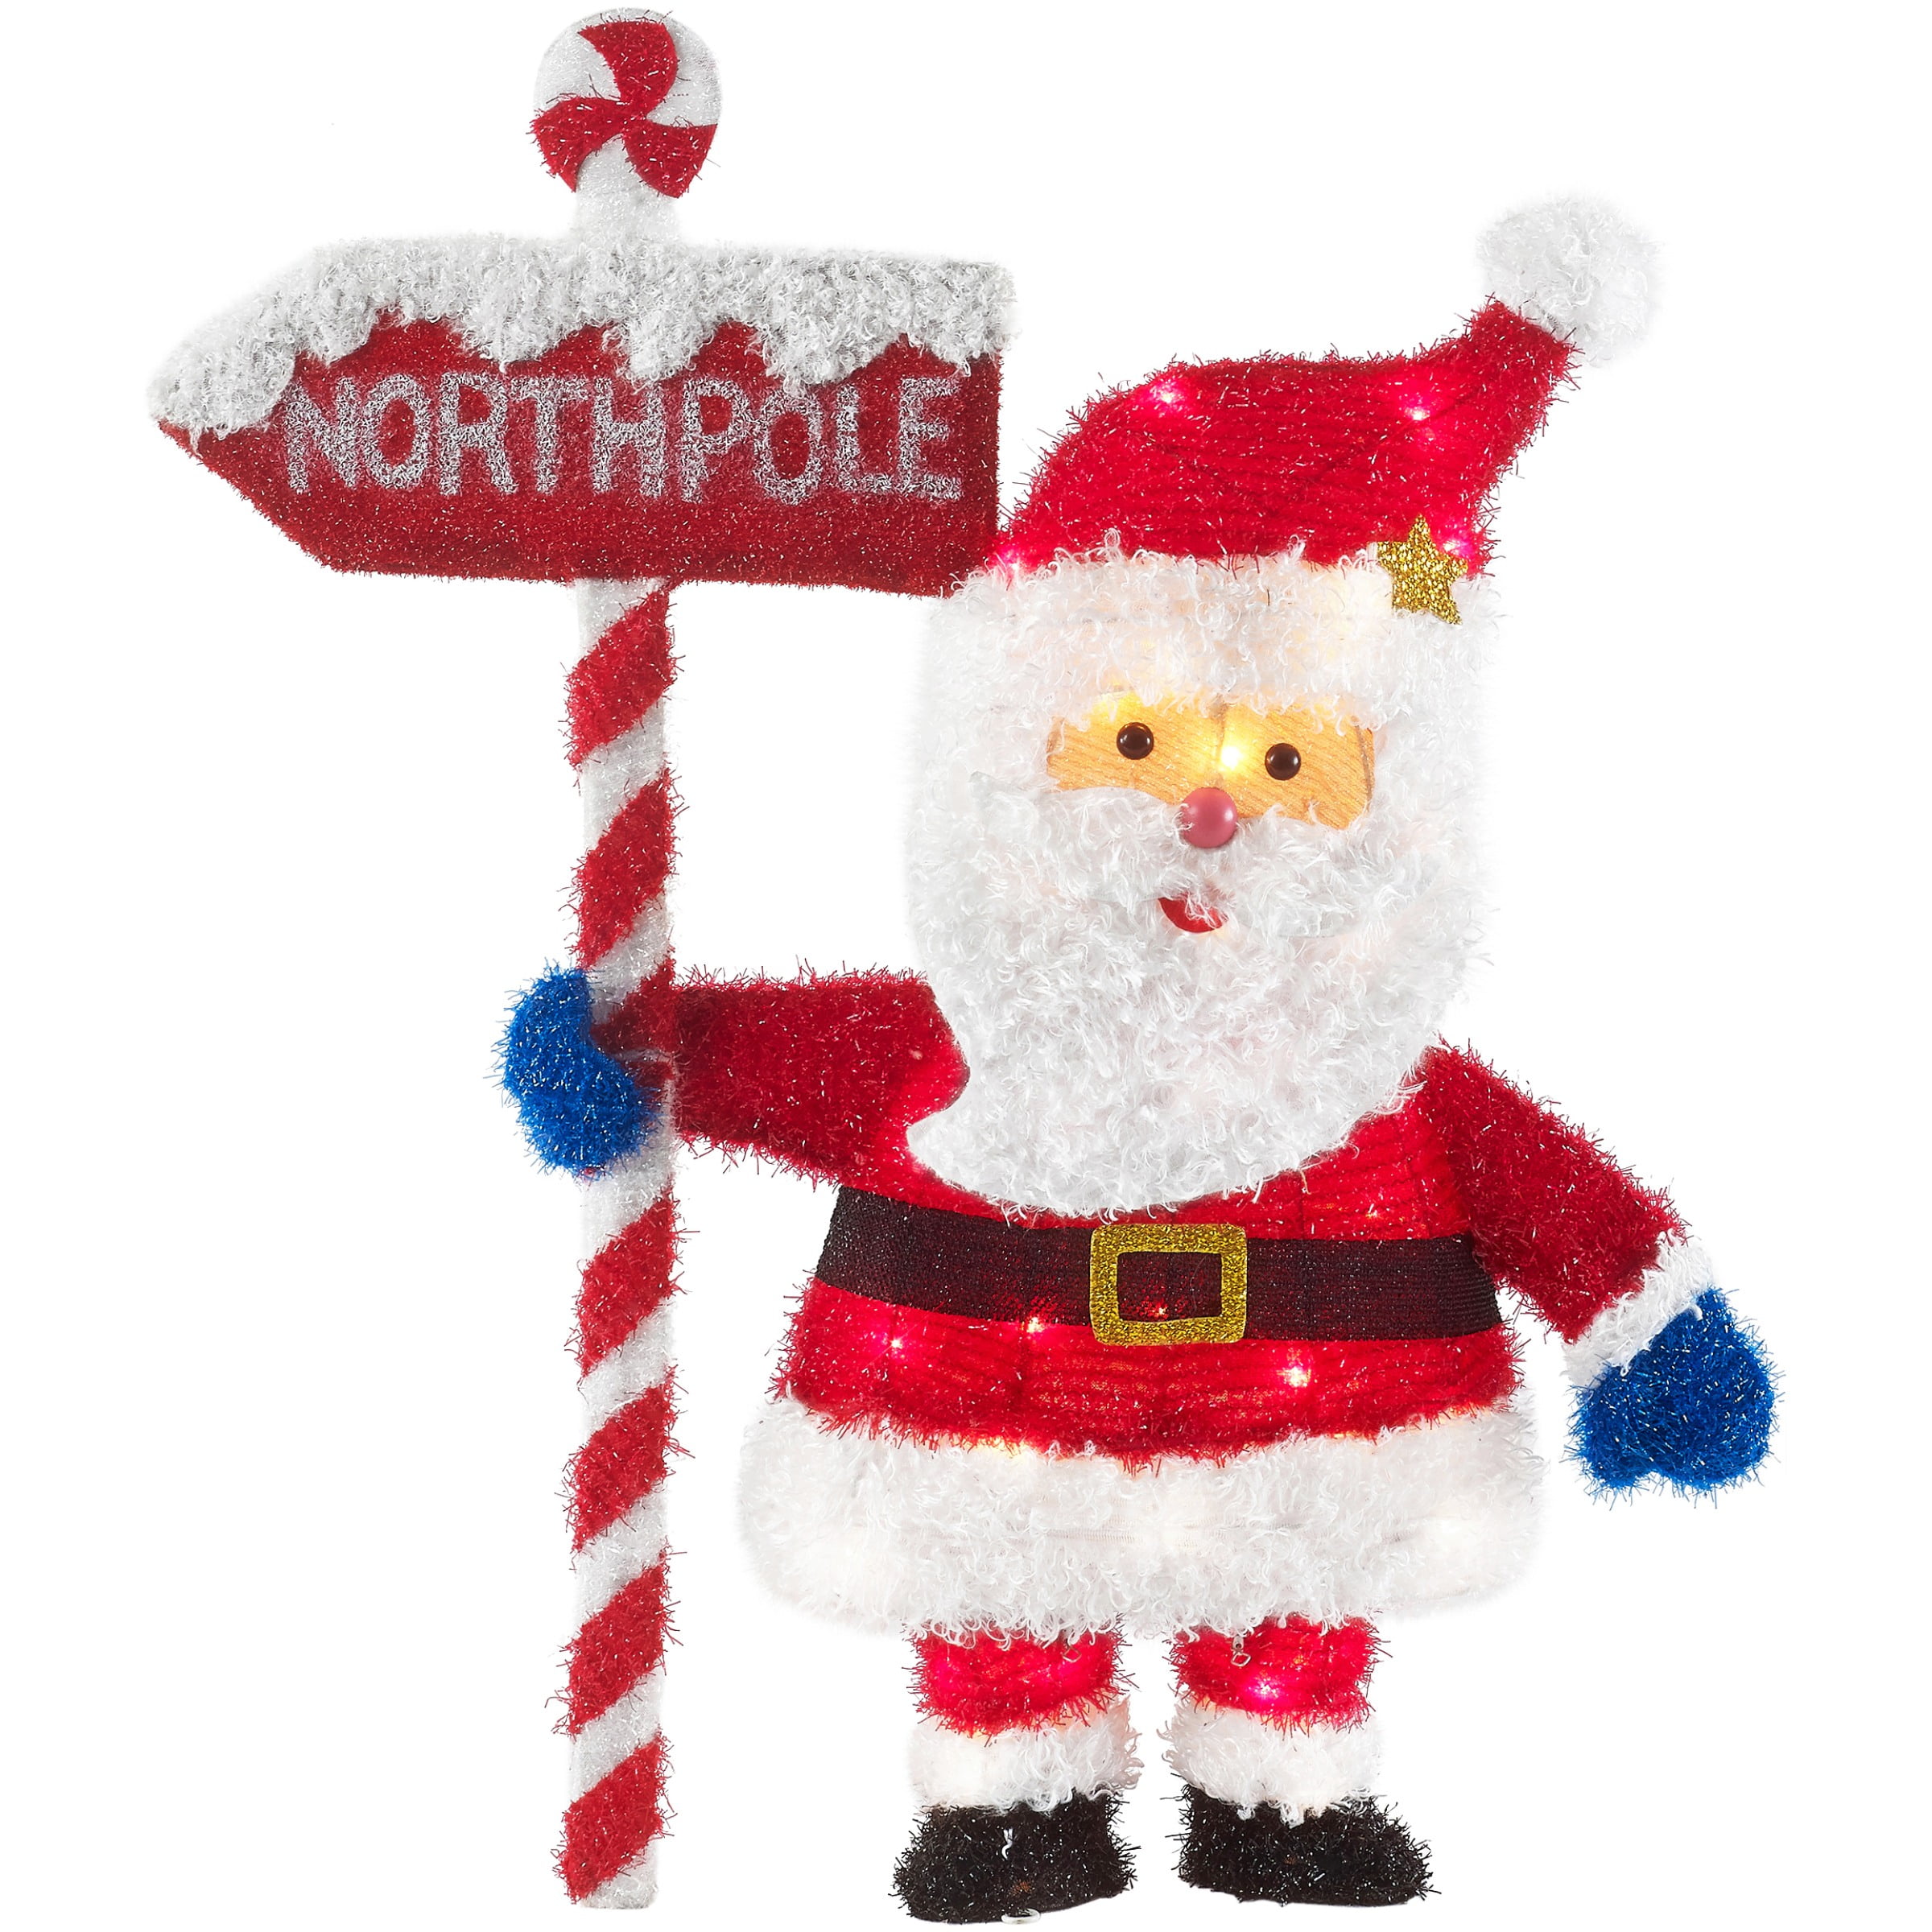 Jolly Santa Santa Clause Christmas Plates Holiday Plates Winter Wonderland North Pole